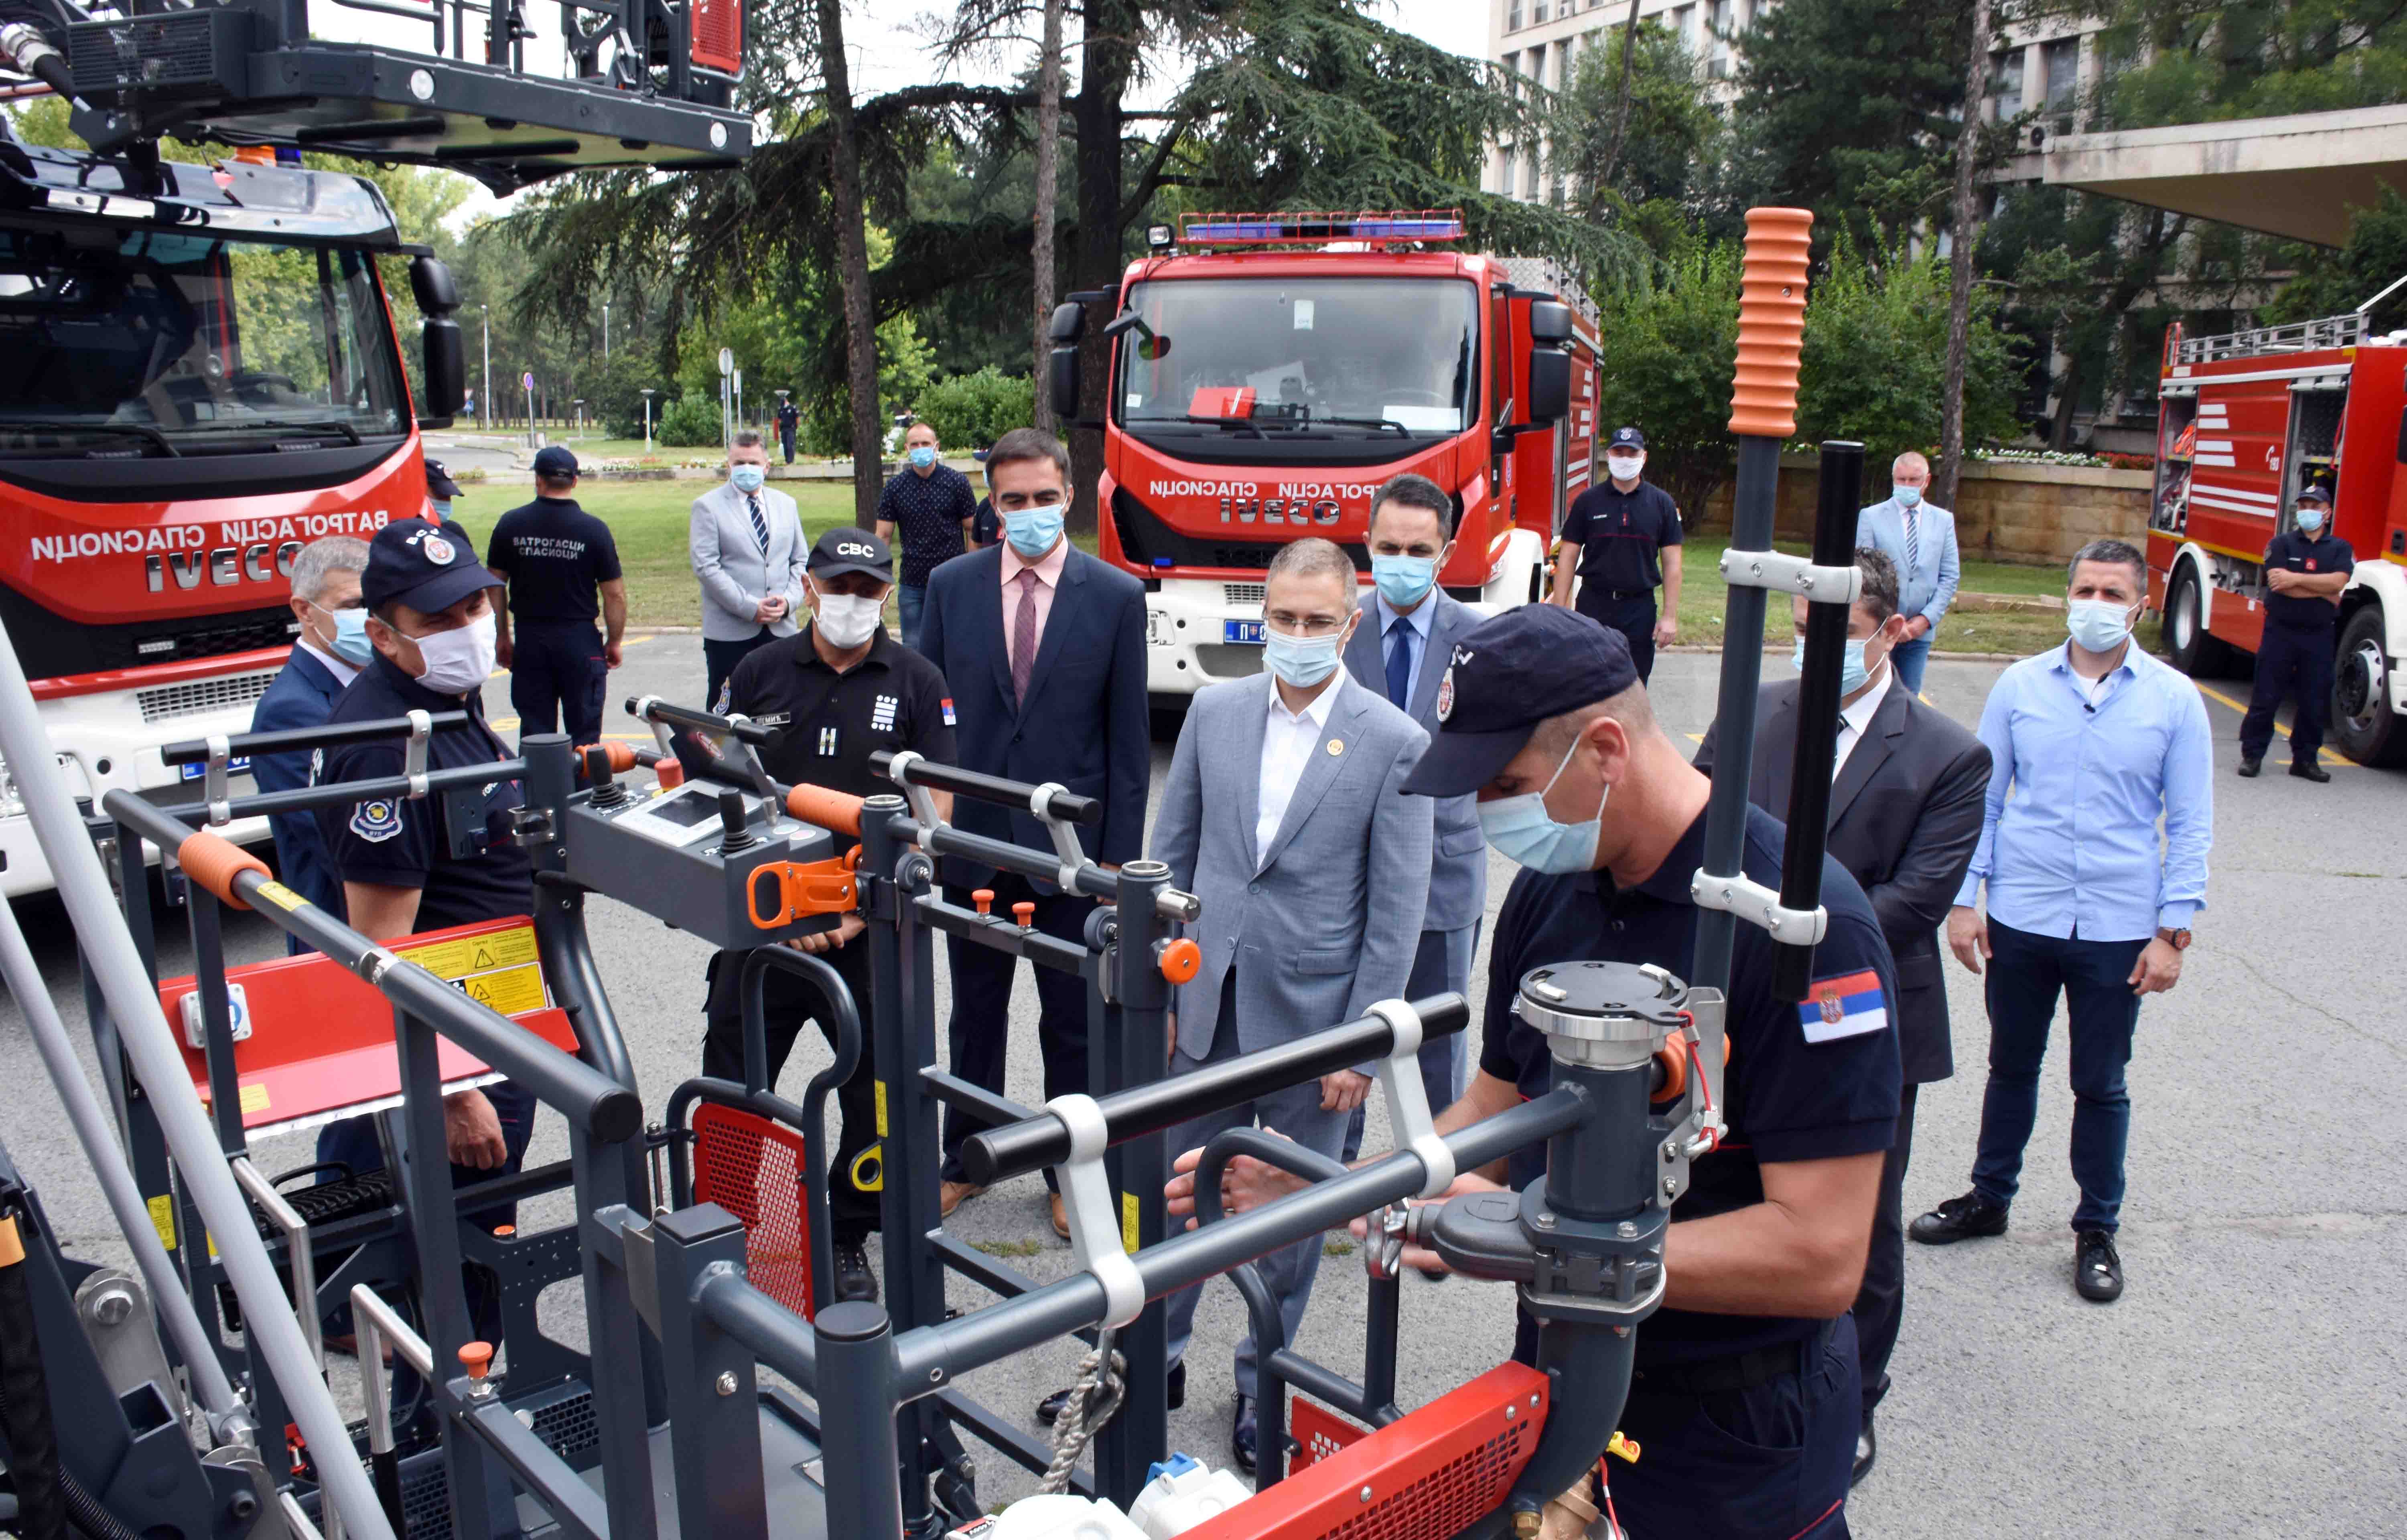 Стефановић: Министарство унутрашњих послова континуирано улаже у подизање капацитета ватрогасно-спасилачких јединица и полиције